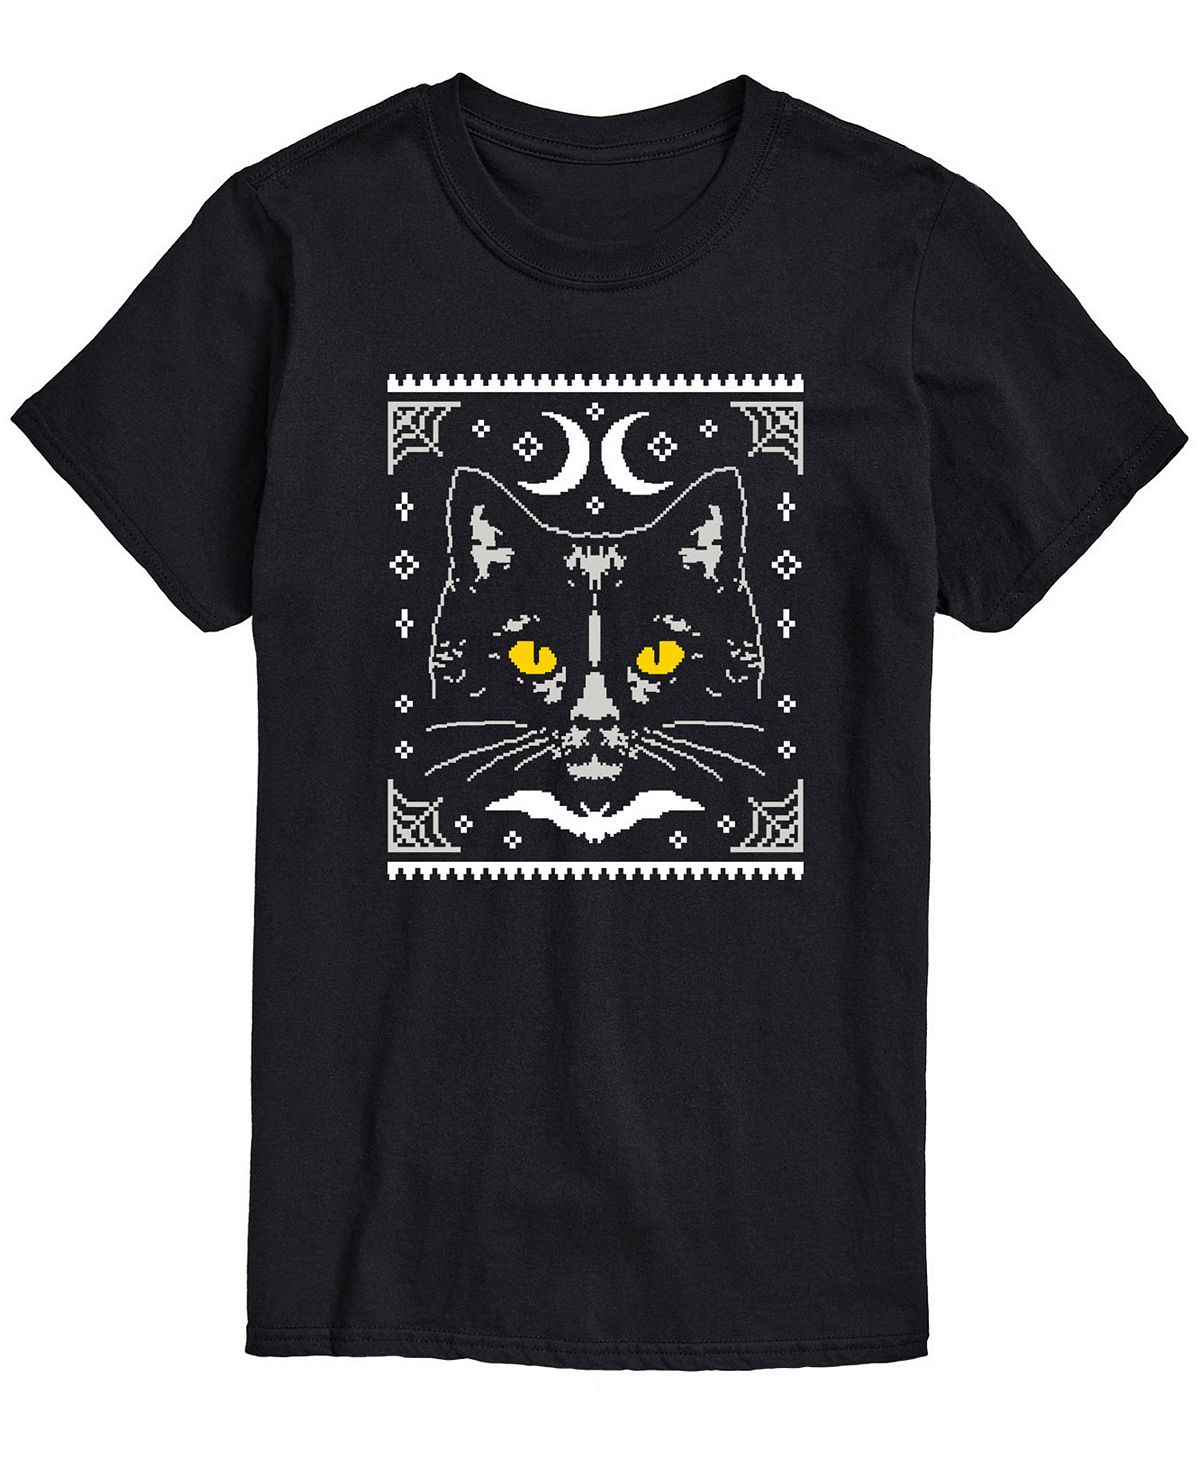 цена Мужская футболка классического кроя «Хэллоуин с котом» AIRWAVES